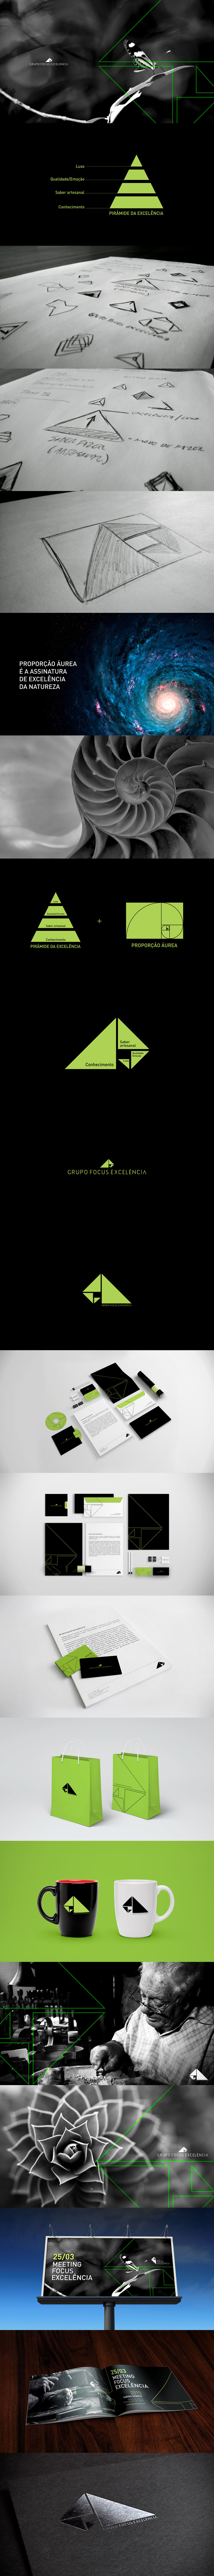 Adobe Portfolio identidade visual design comunicação Logotipo